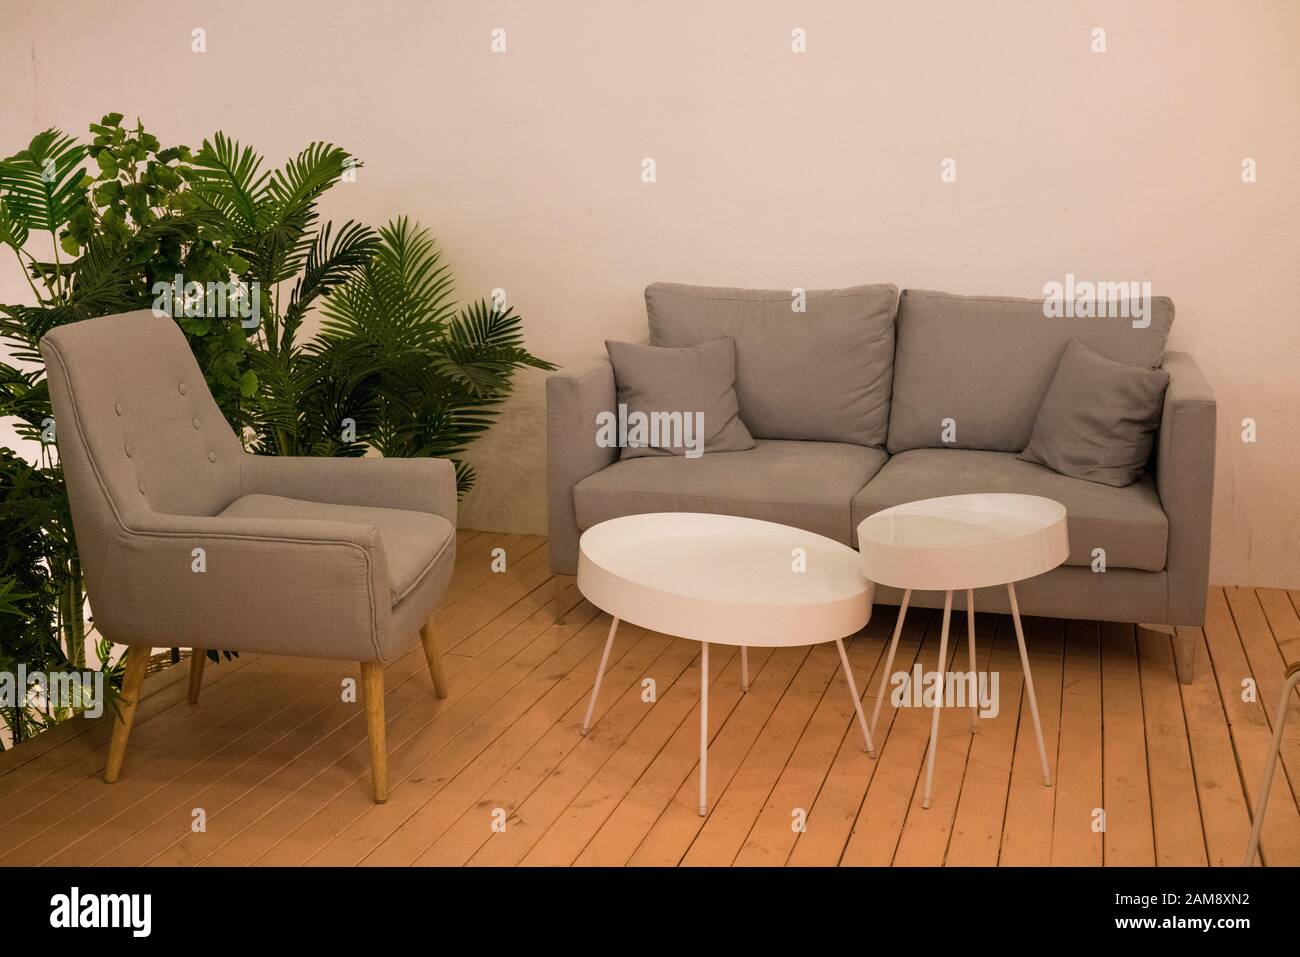 Decorazioni interne, con morbido divano e tavolo bianco. Luogo accogliente per il riposo. Foto Stock